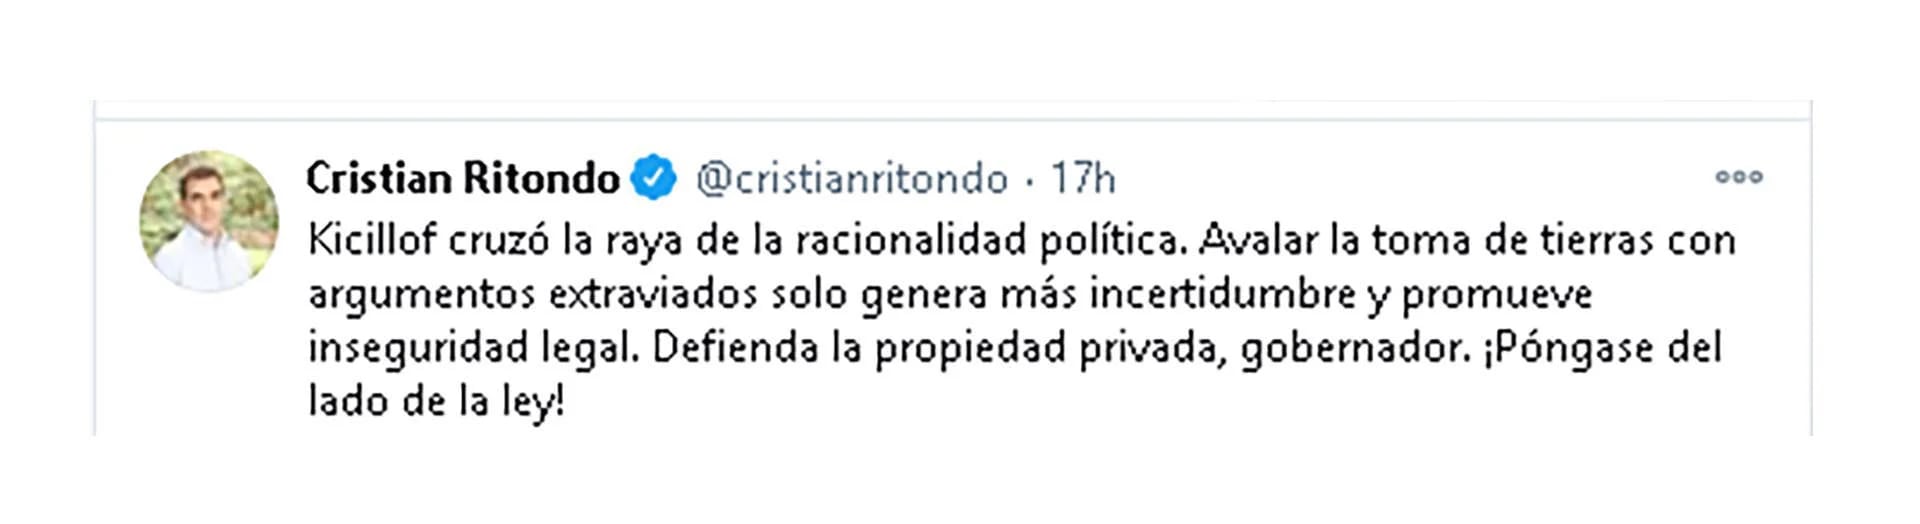 Desde su cuenta de Twitter el Diputado Nacional por la Provincia de Buenos Aires y Presidente del bloque PRO instó al Gobernador Bonaerense a ponerse del lado de ley.